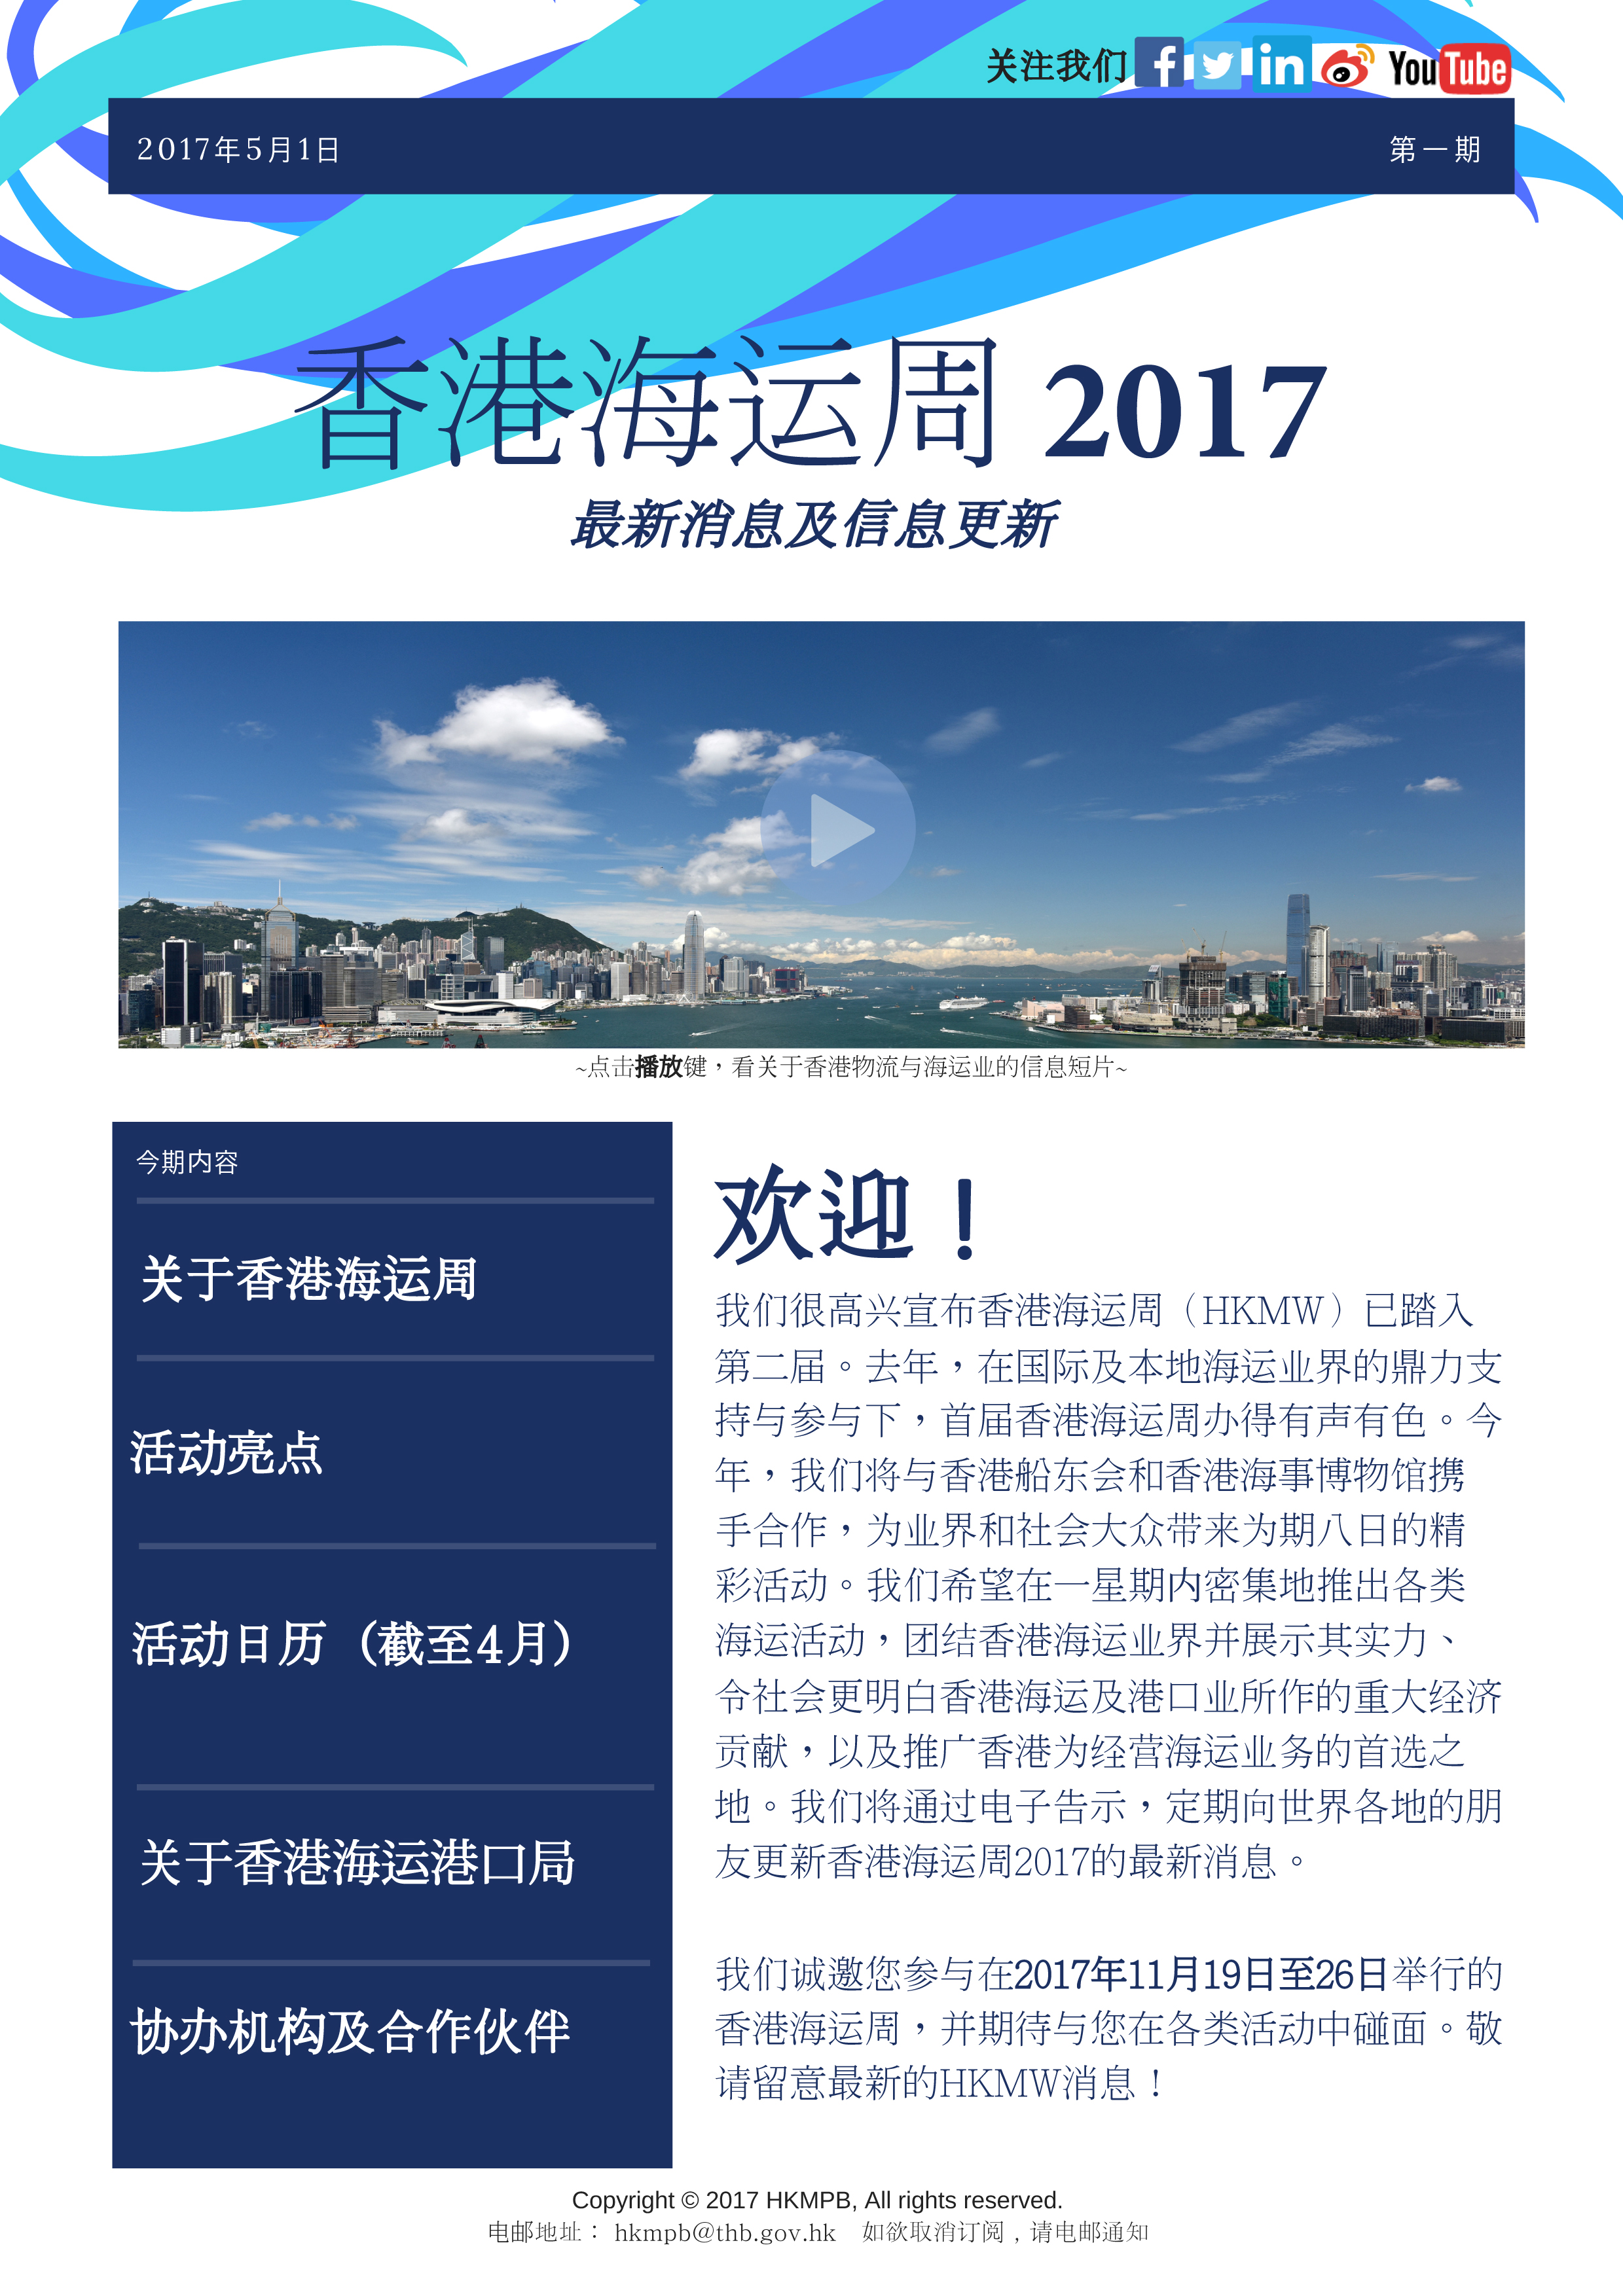 香港海運周2017 電子簡報第1期